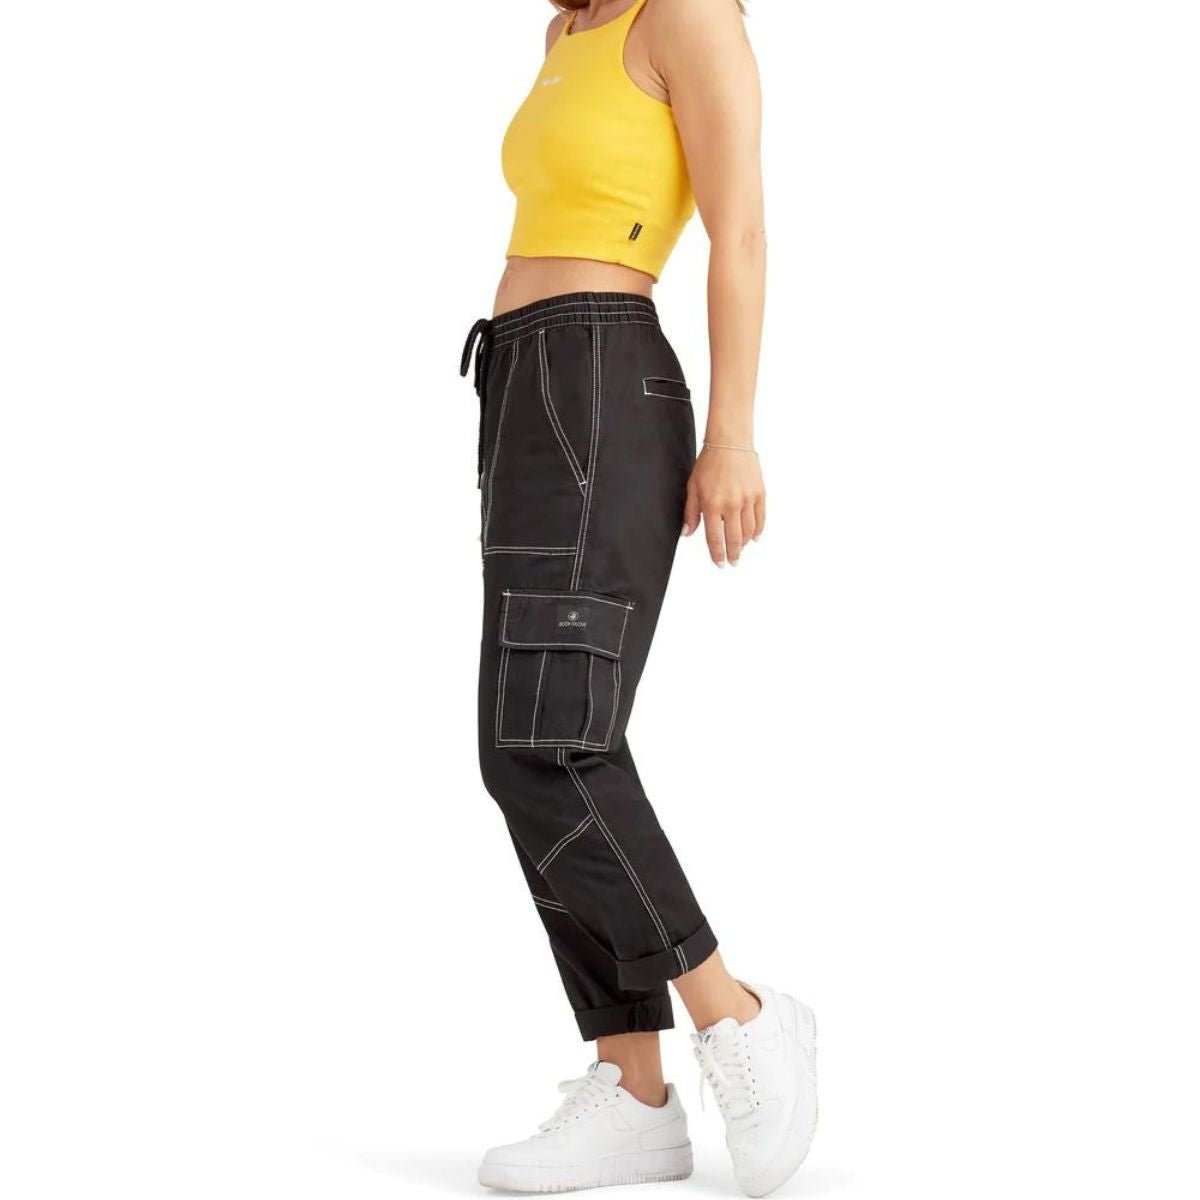 Body Glove Sportswear Women's Cargo Pant in Black - BoardCo